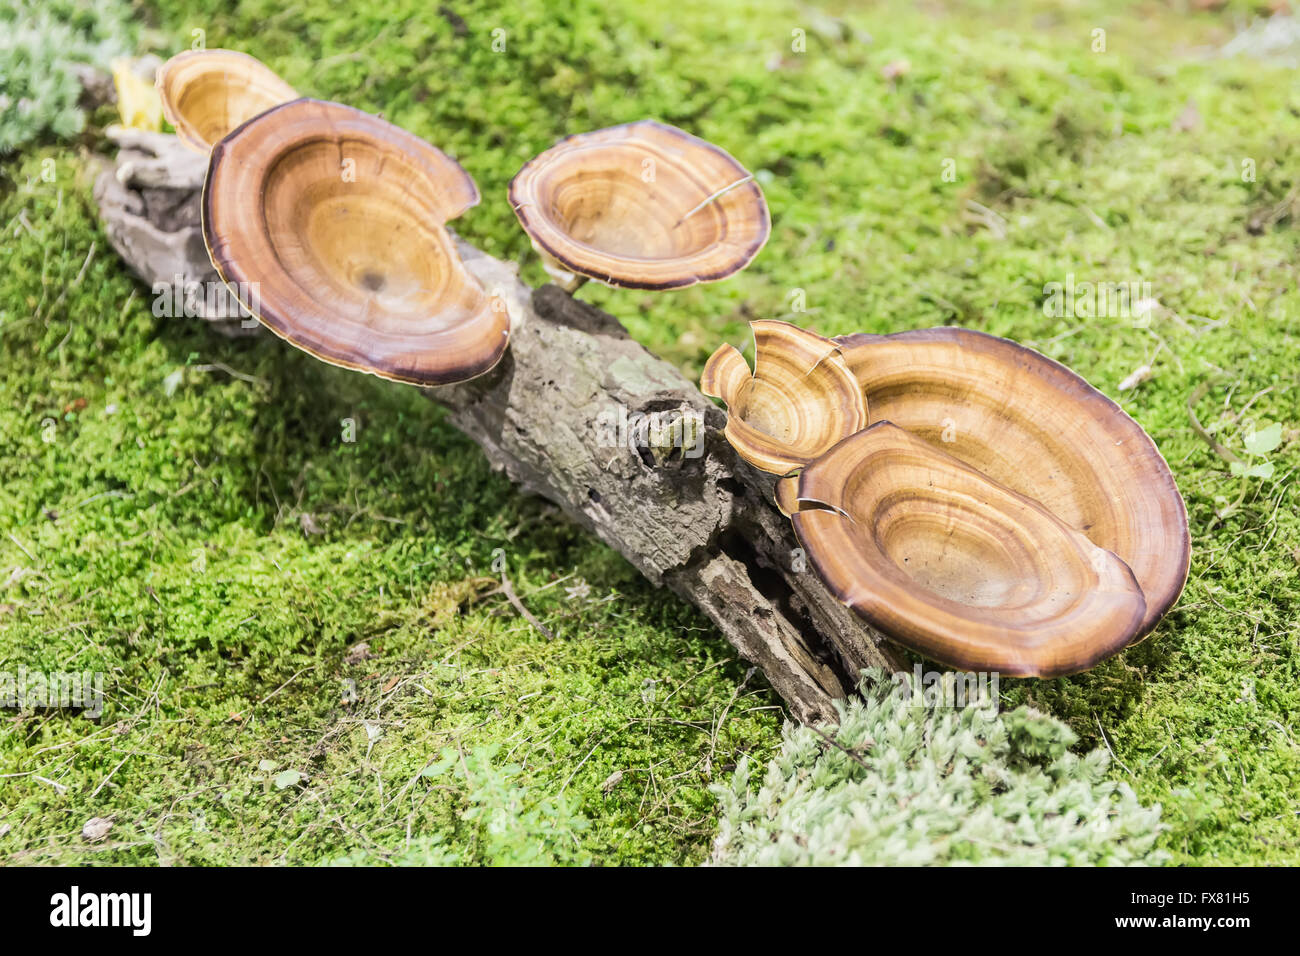 Orange mushroom growing on wood. Stock Photo